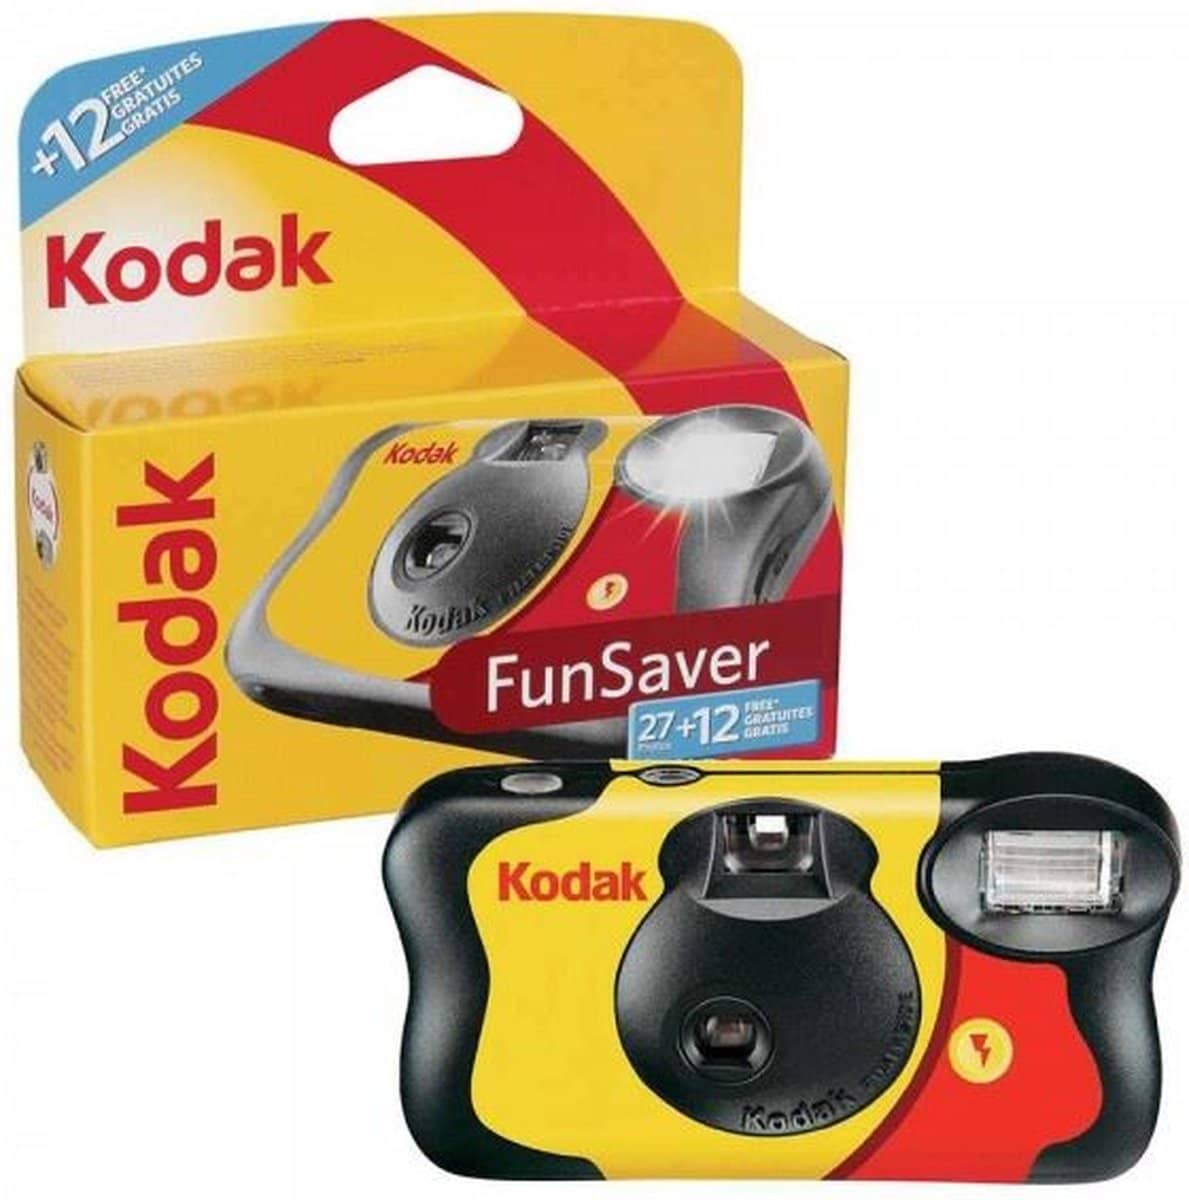 Kodak – Wegwerpcamera met flitser. Met flitser